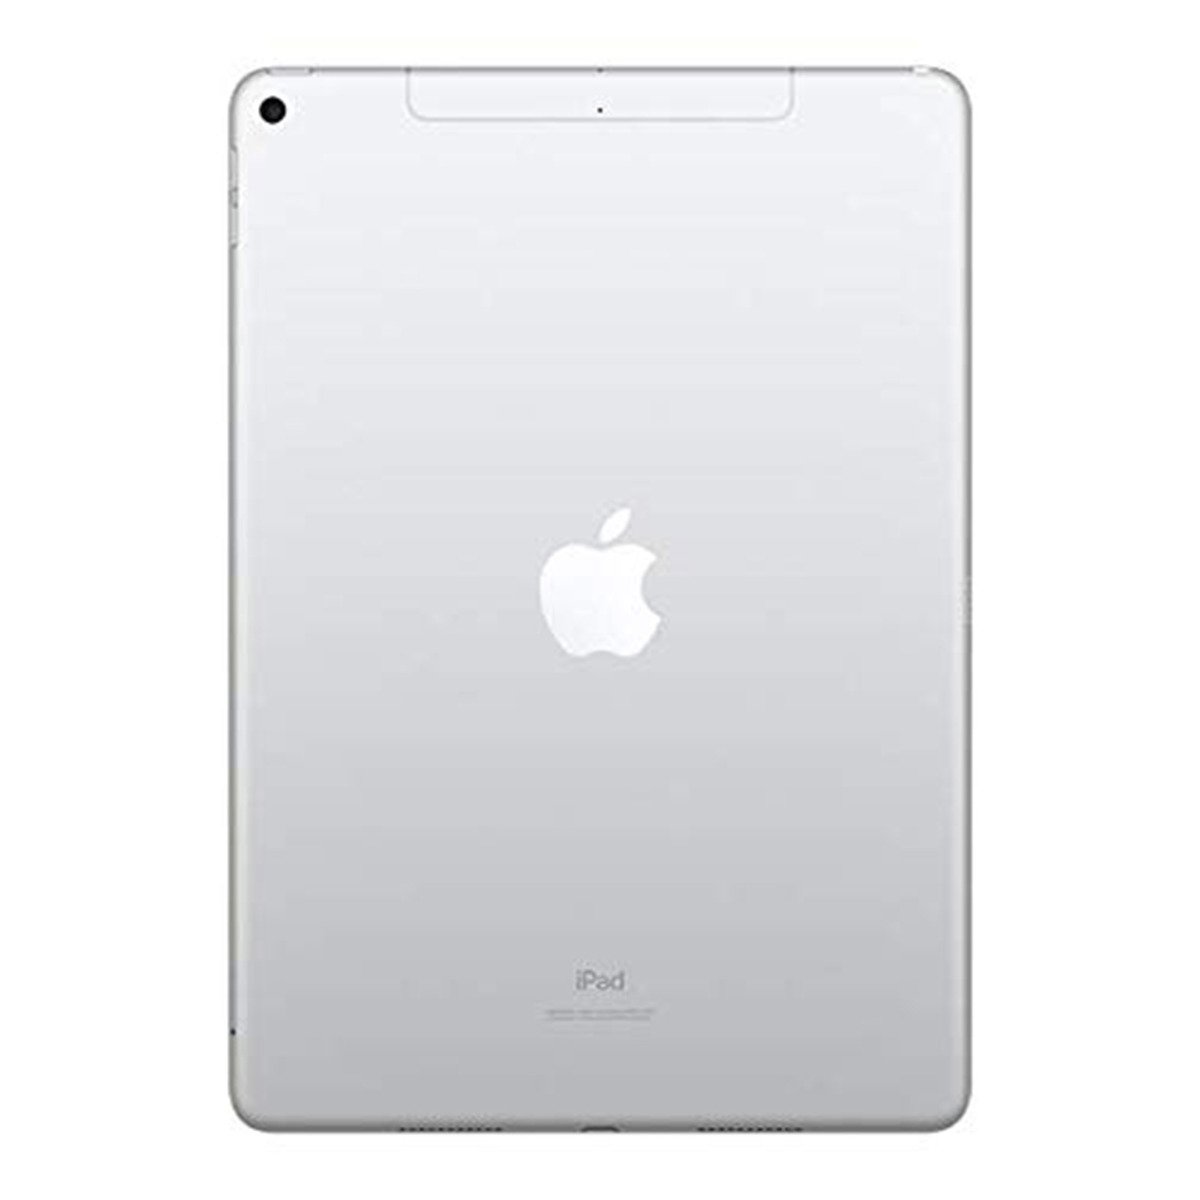 Apple iPad Air (2019) - iOS (Wi-Fi + Cellular, 256GB)10.5inch Silver